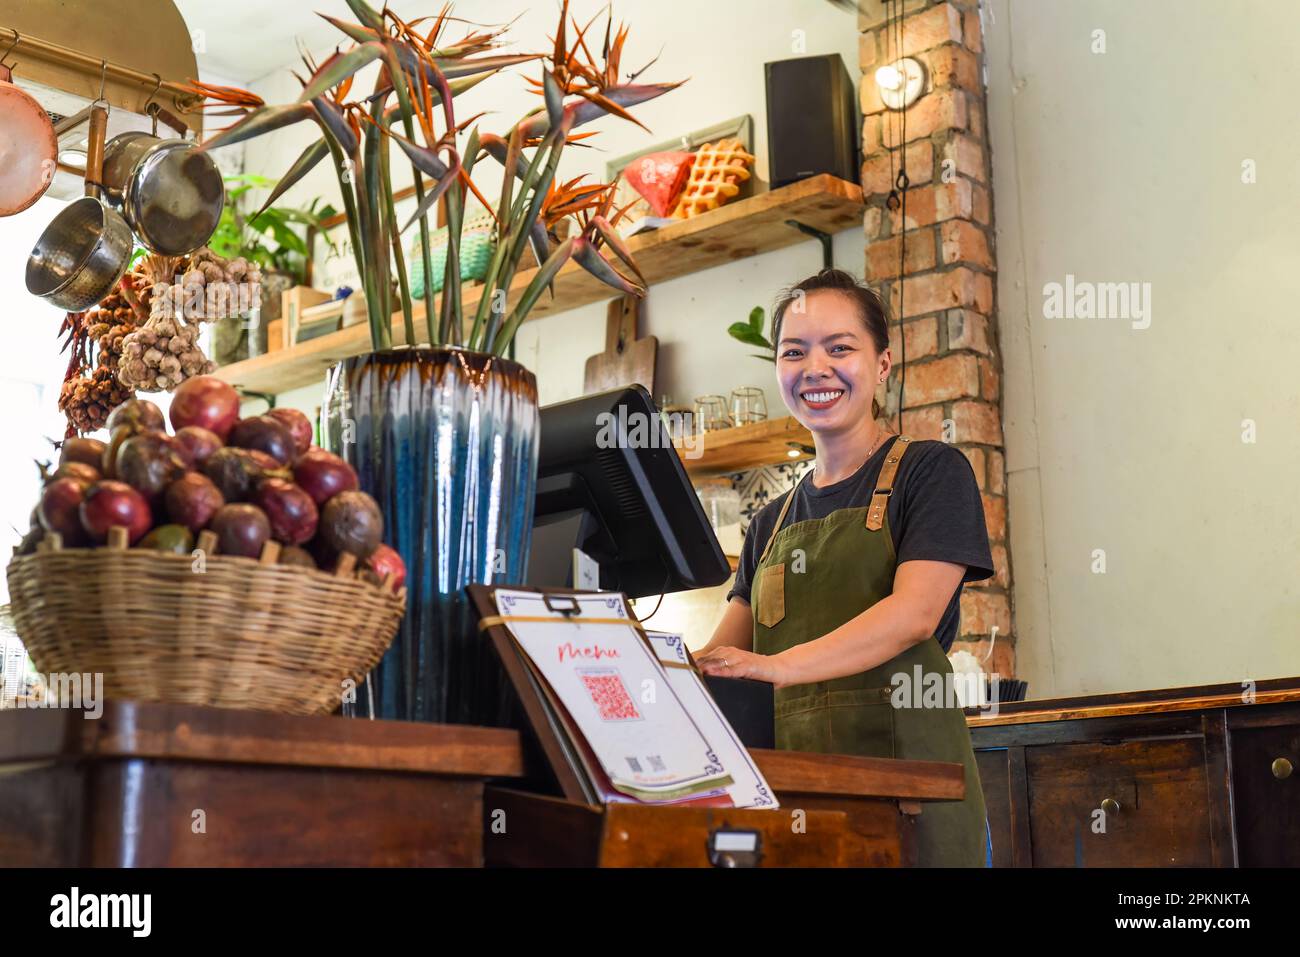 Bonne serveuse vietnamienne travaillant dans une cuisine d'un café Banque D'Images